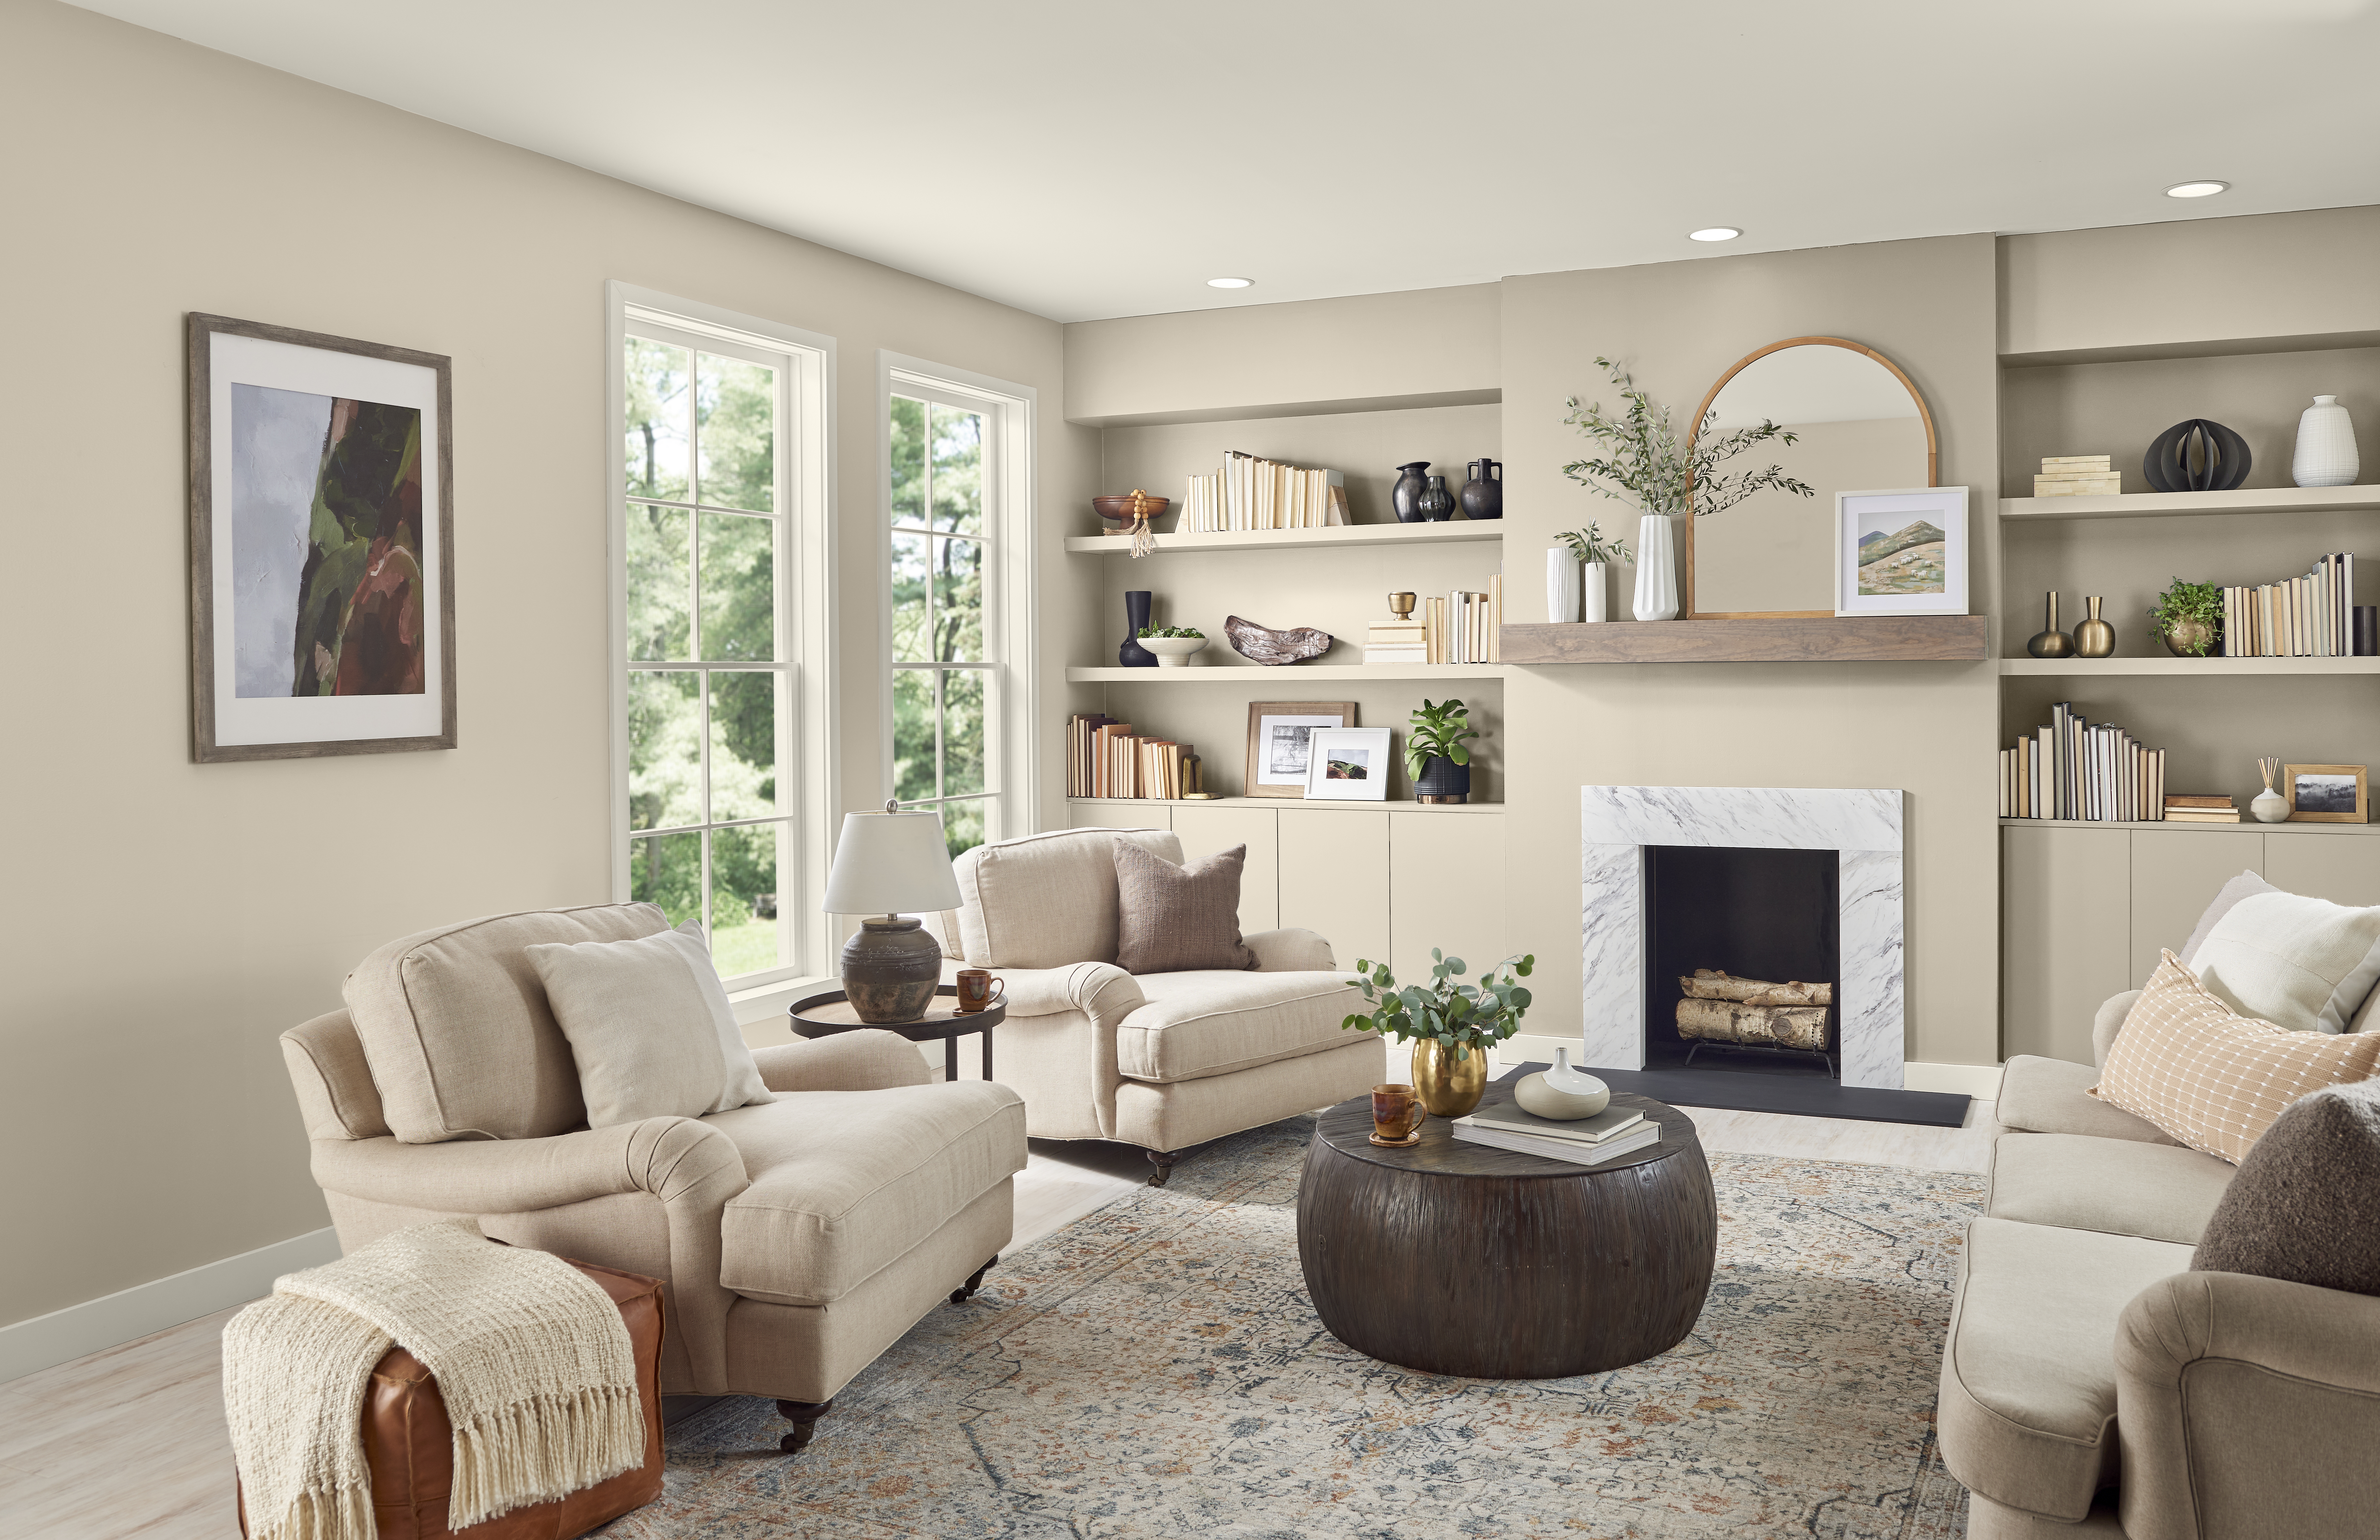 Un salon confortable aux murs et étagères intégrées peints en Encore plus beige, meublé de neutres assortis.